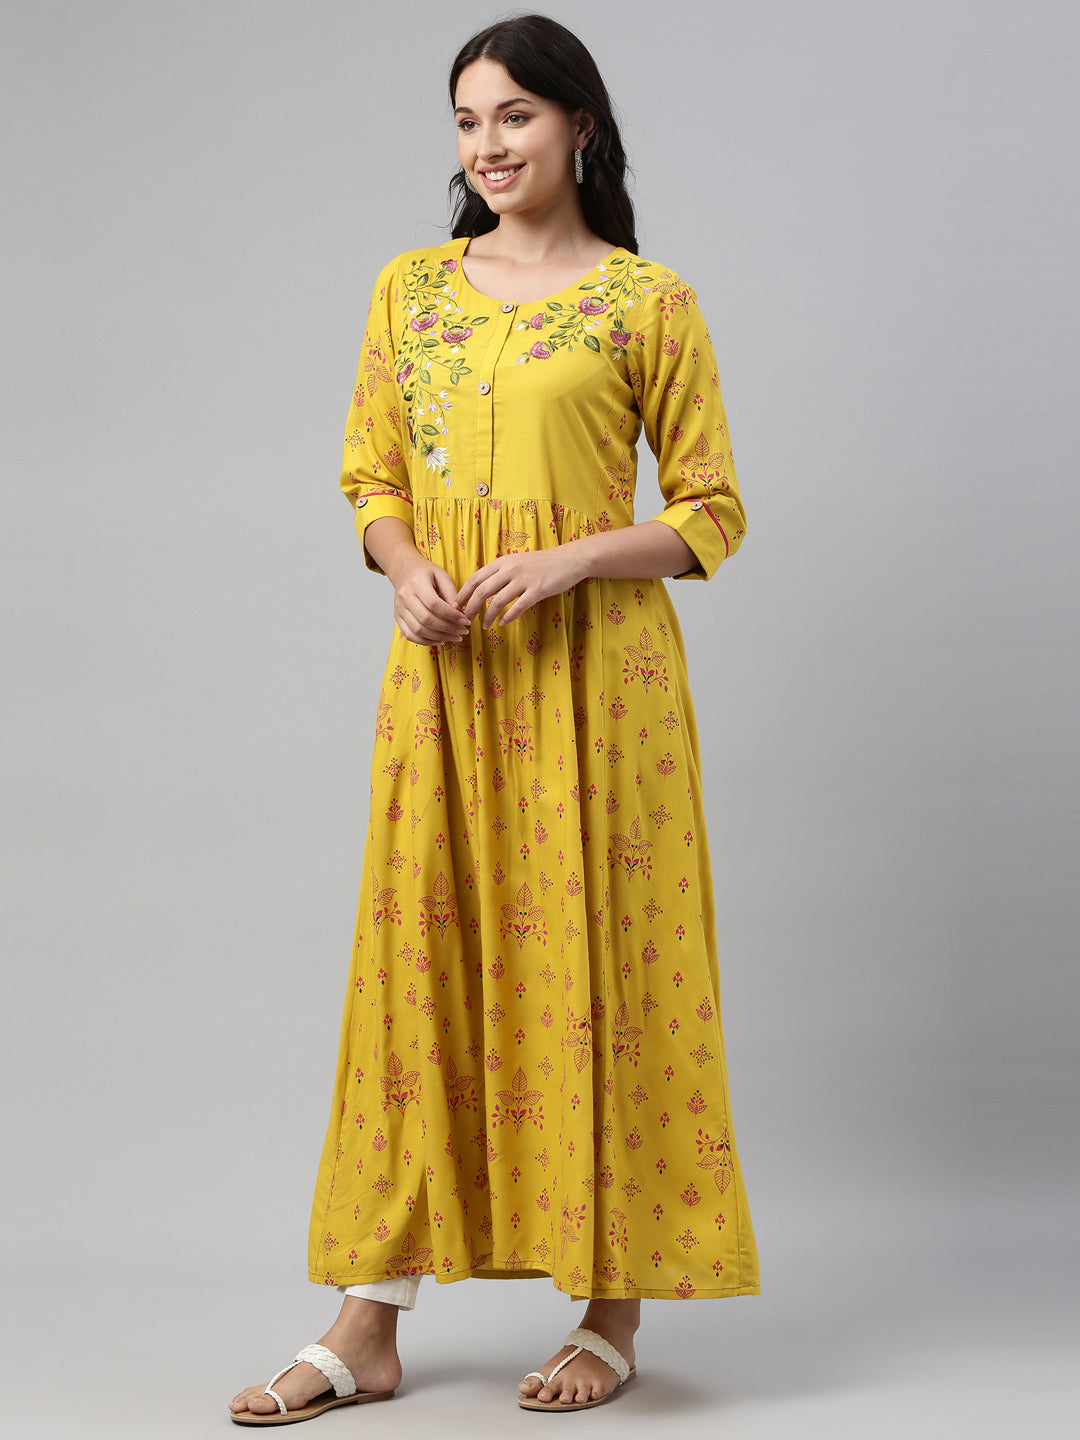 Neeru's Mustard Color Rayon Fabric Tunic